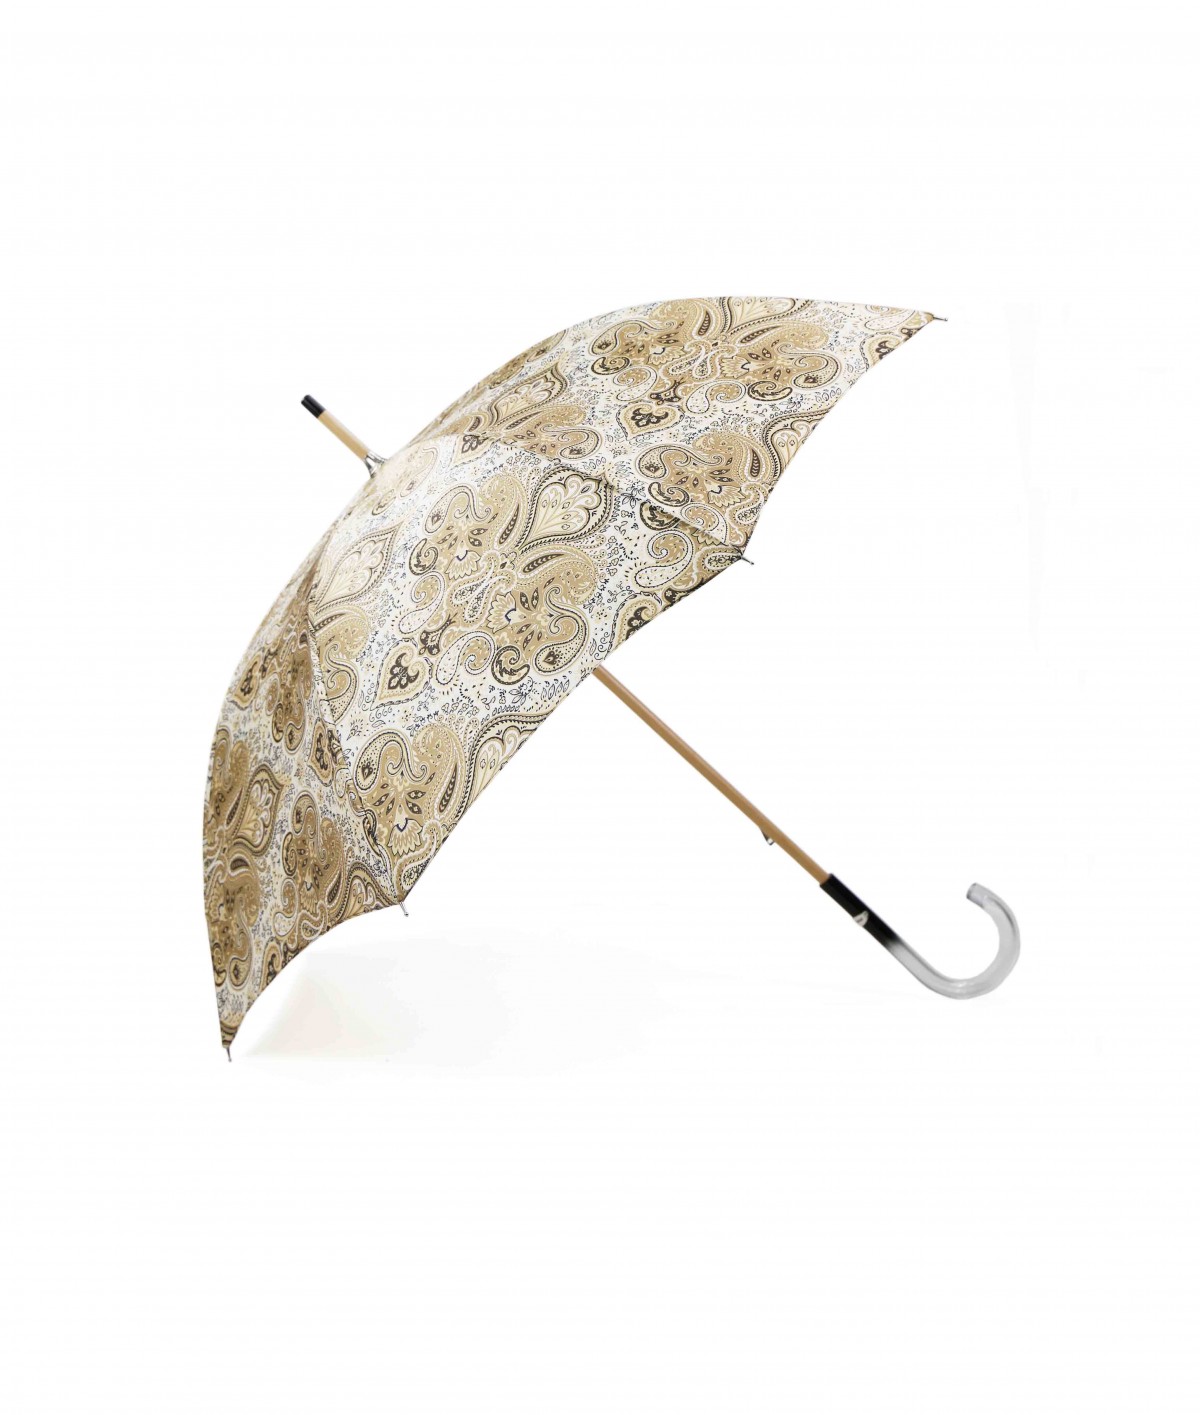 → Parapluie Satin Imprimé Fantaisie - Long Manuel N°21 - Made in France par Maison Pierre Vaux Fabricant Français de Parapluie